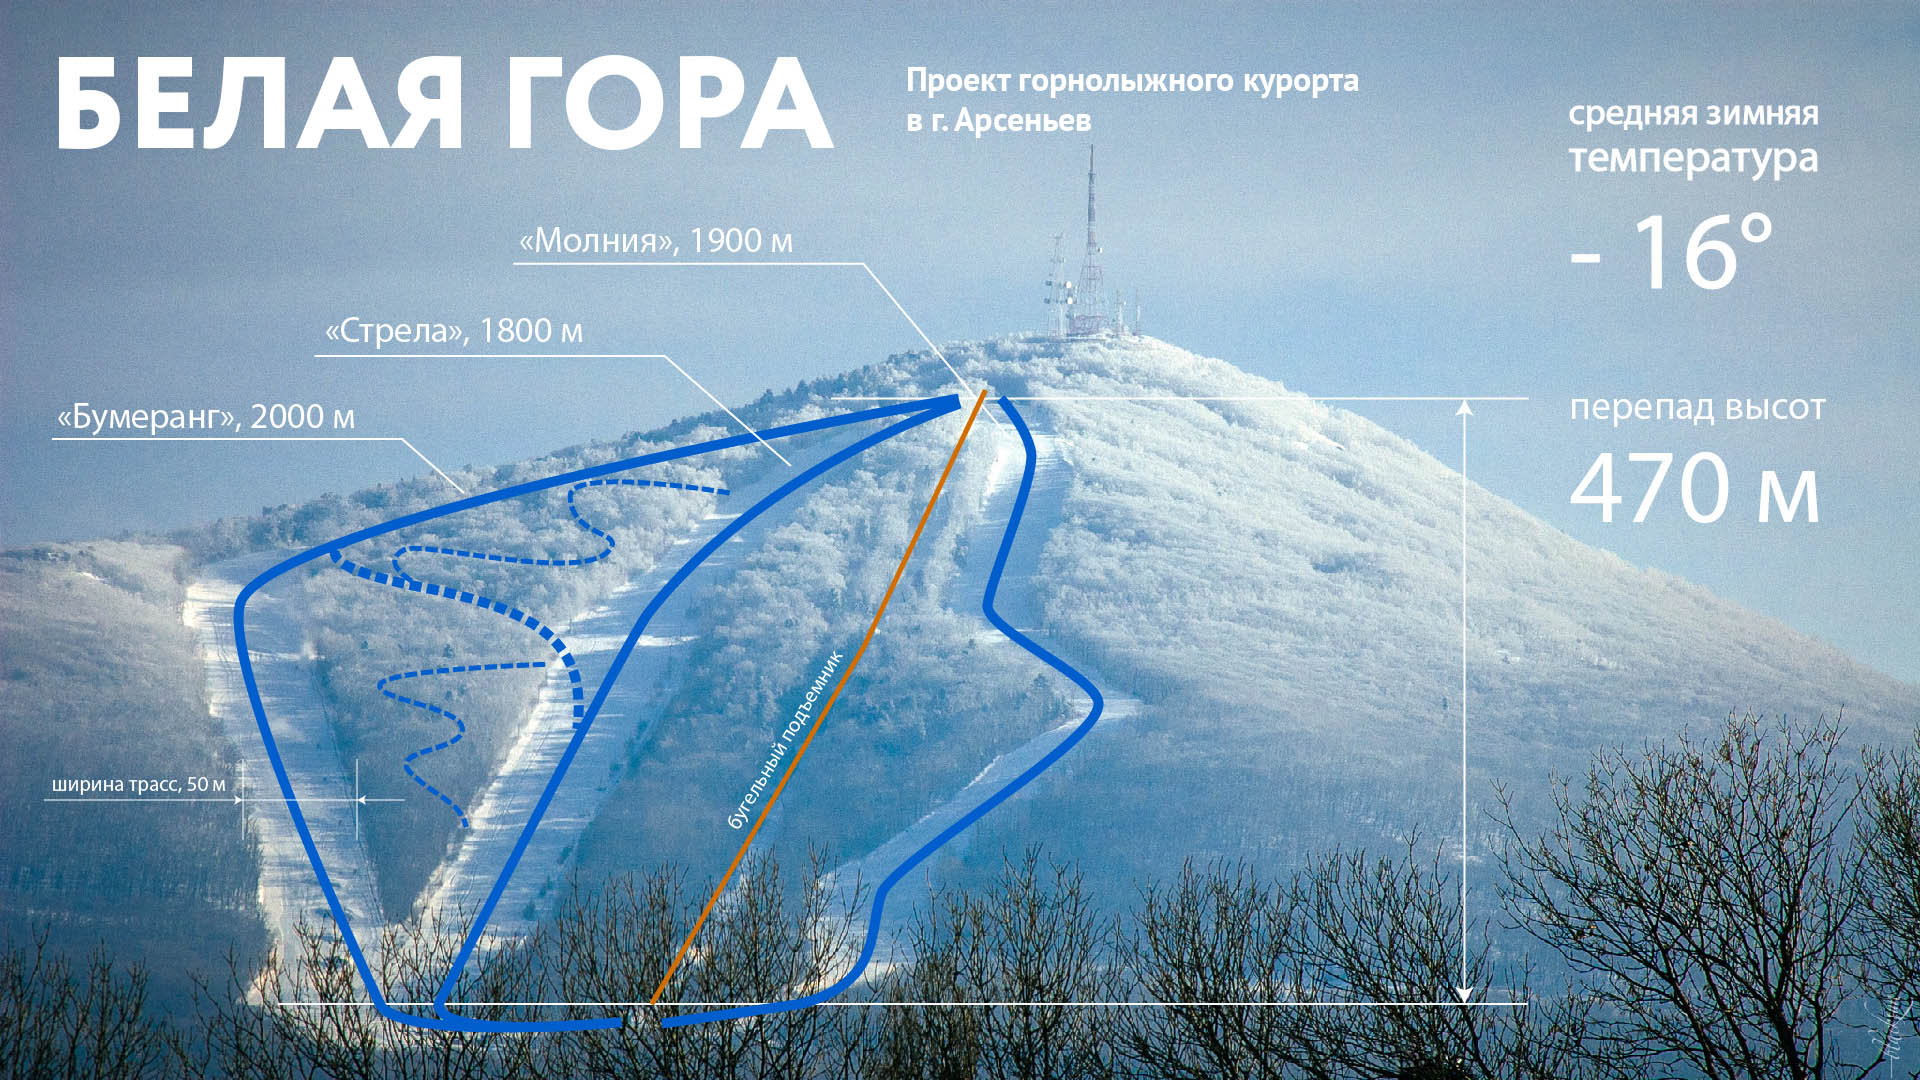 Гора Белая (Свердловская область): фото и отзывы